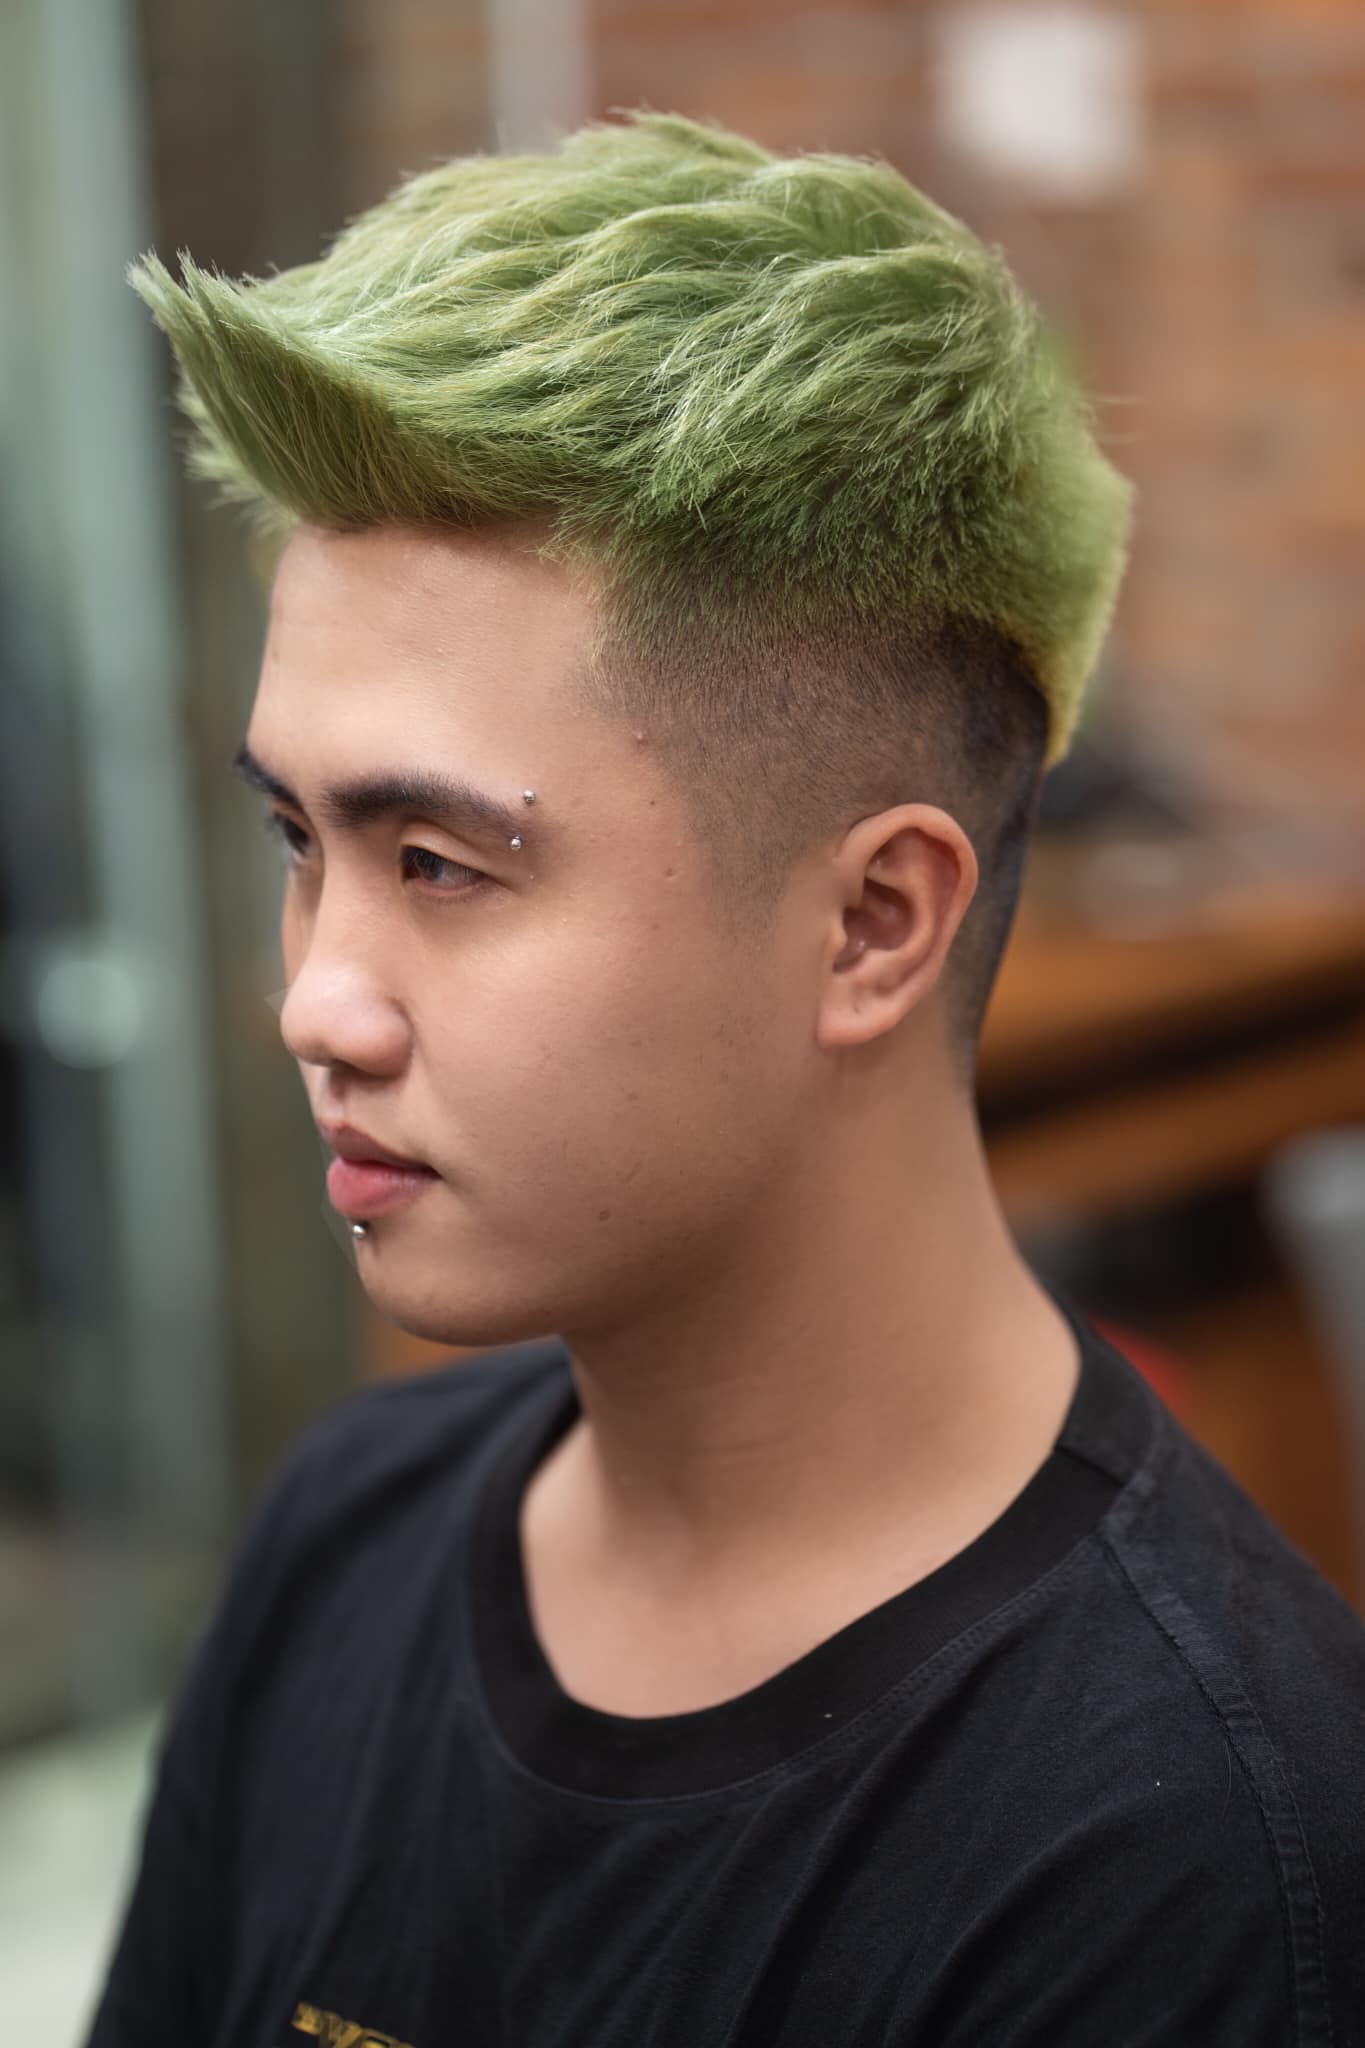 Top 10 địa chỉ tiệm cắt tóc nam đẹp uy tín tại Nam Định